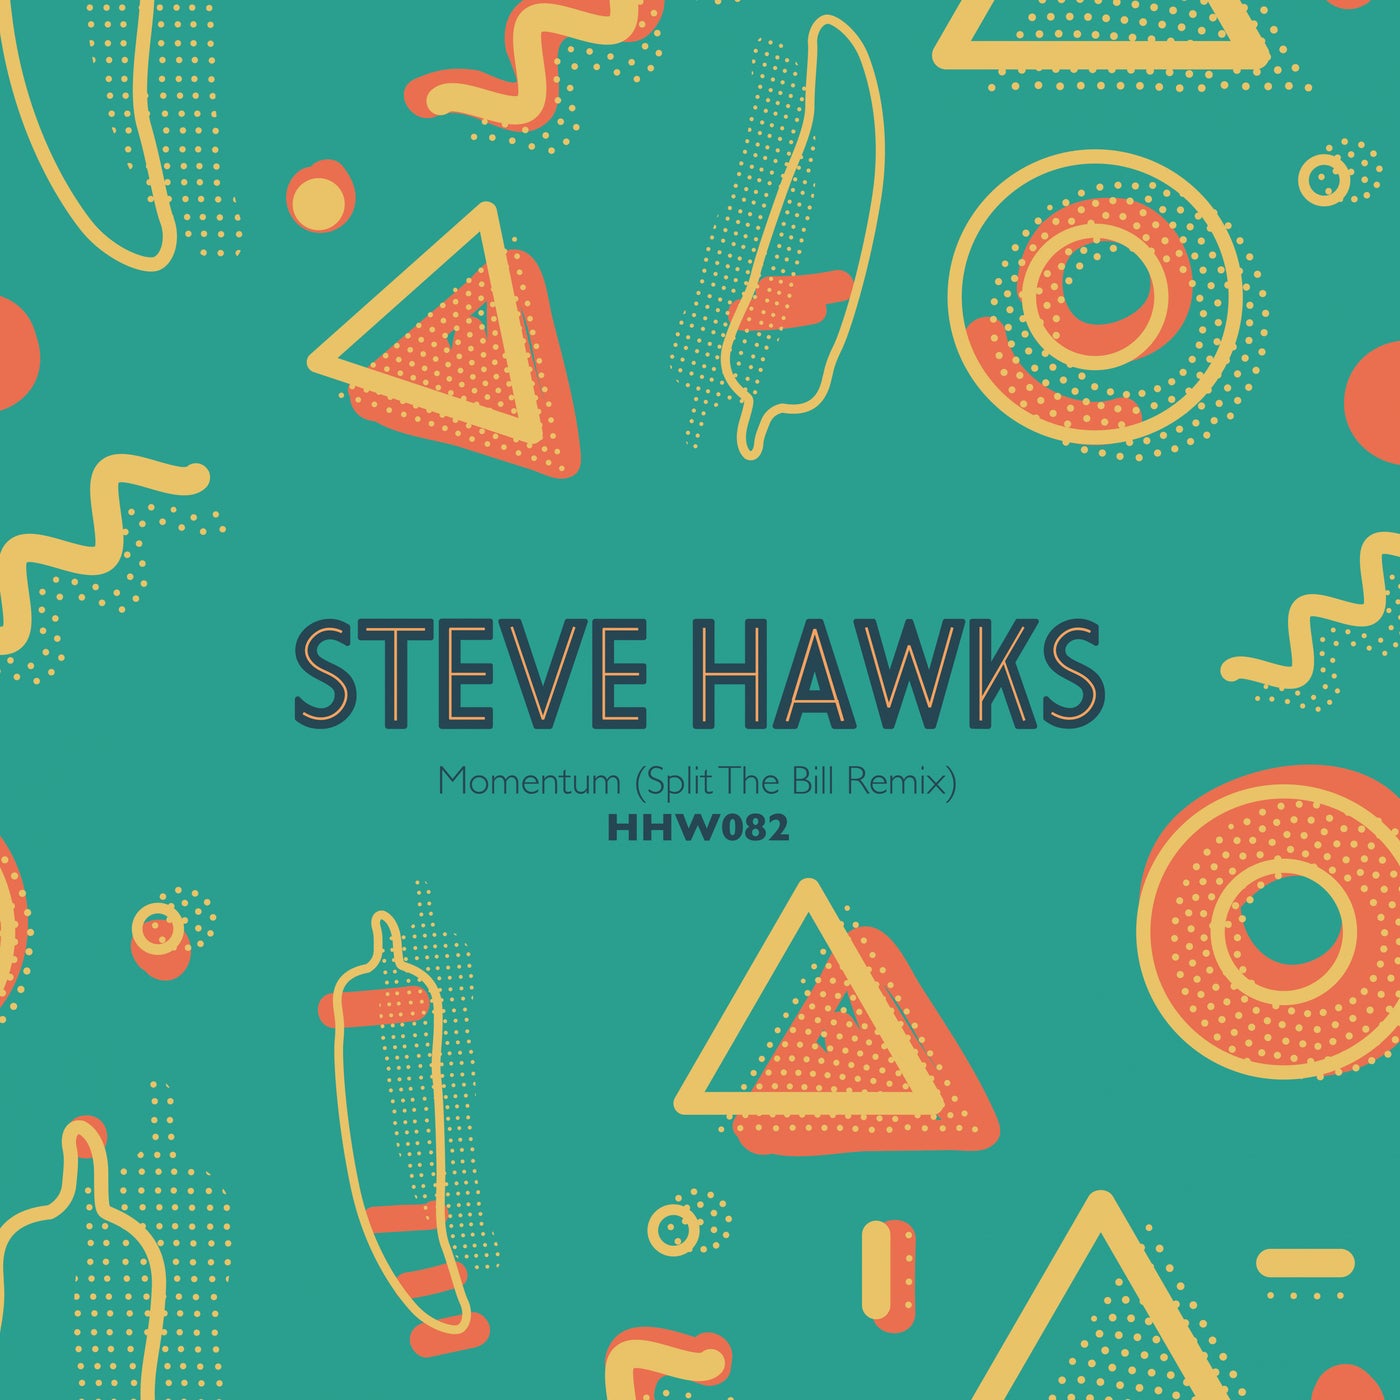 Steve Hawks – Momentum (Split The Bill Remix) [HHW082]